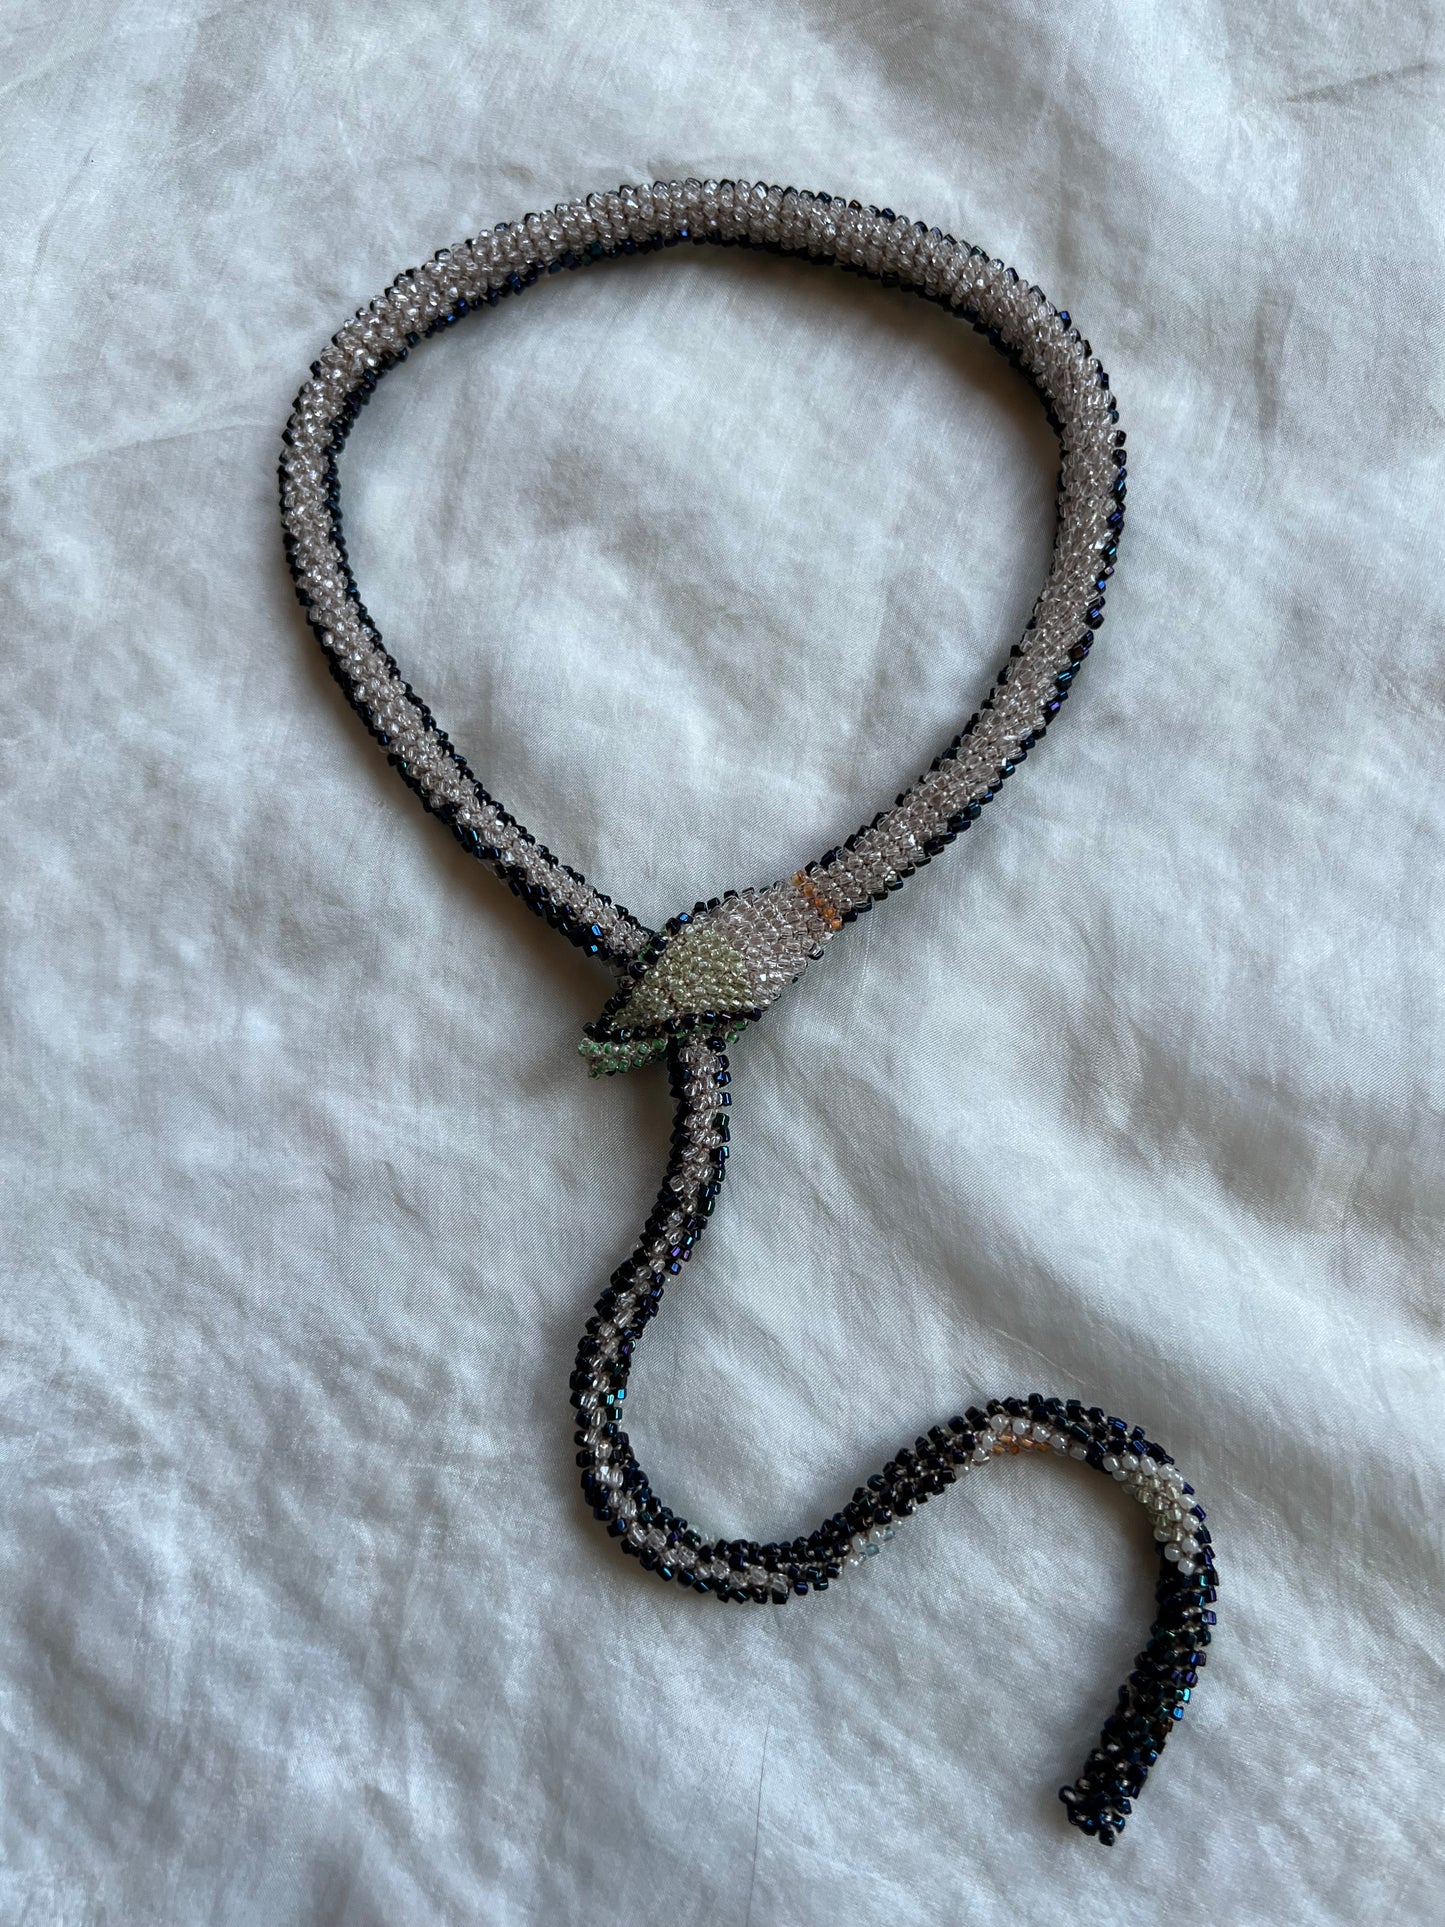 Bead Crochet Snake | Oil Slick